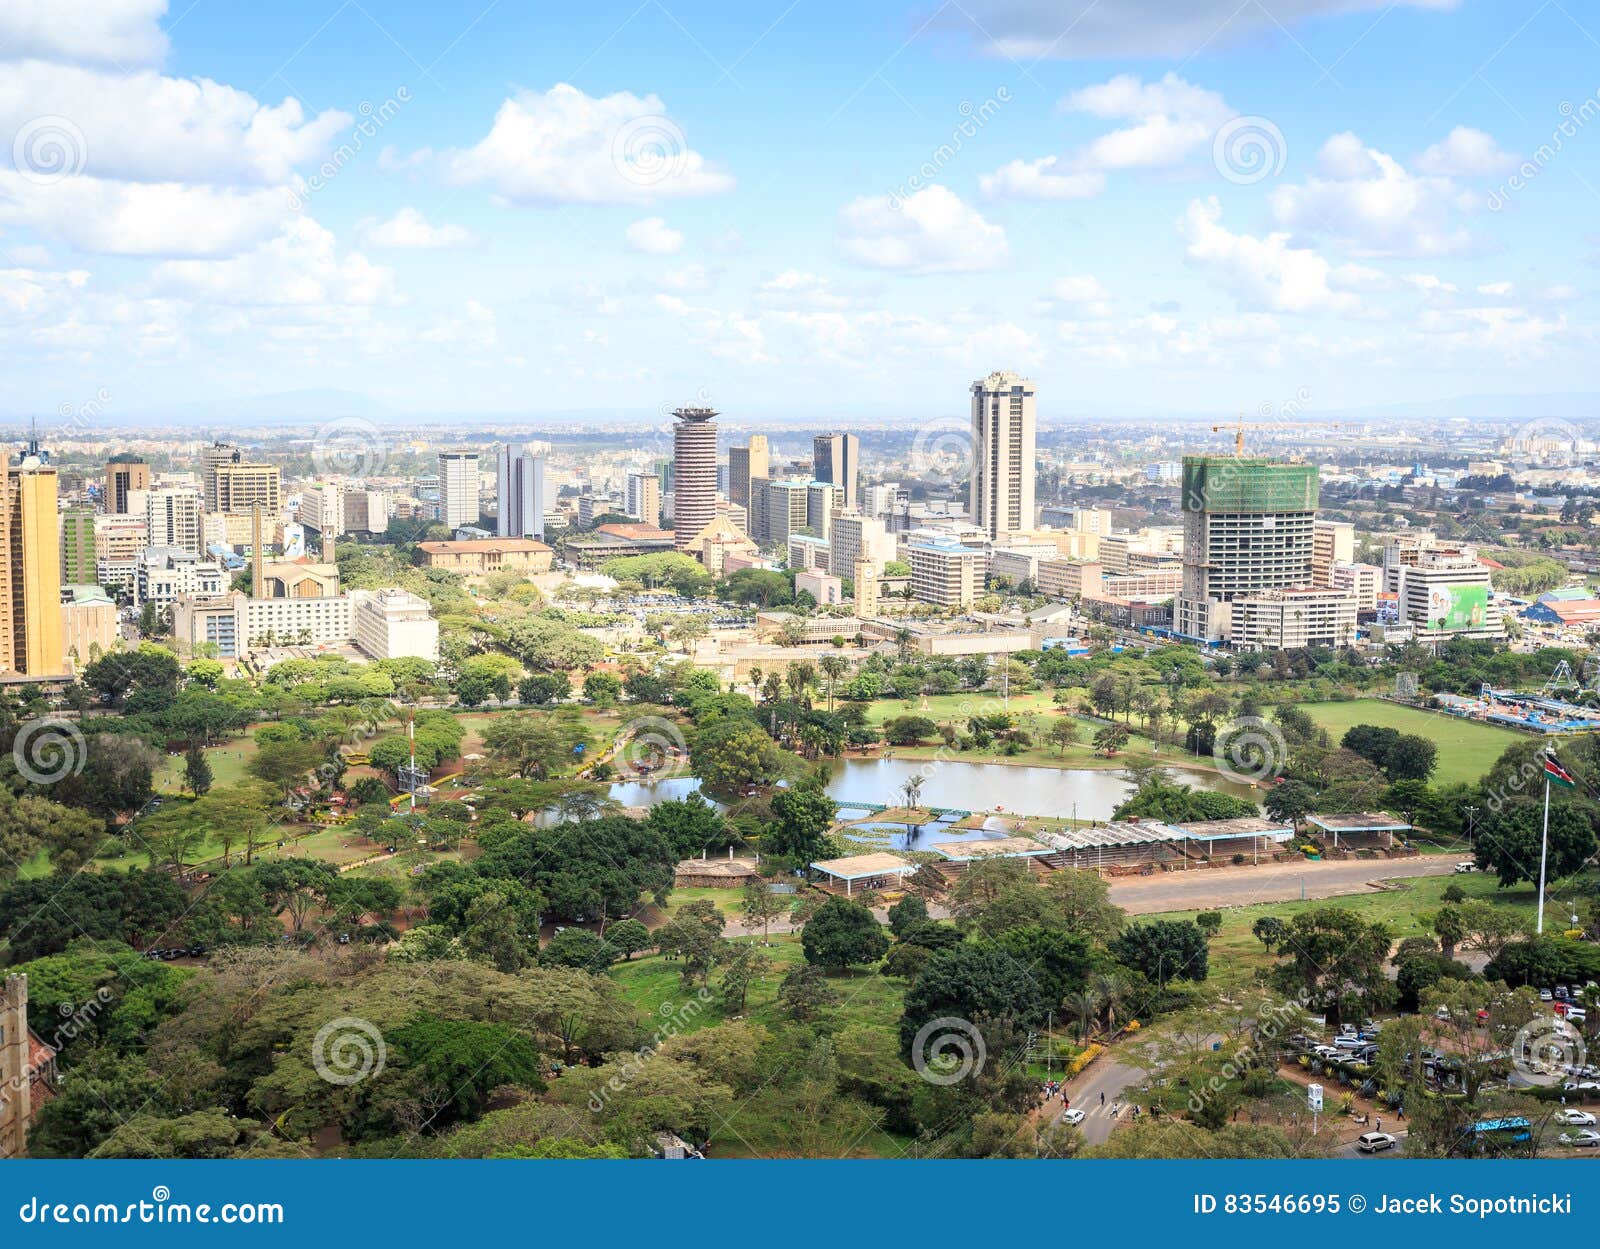  Nairobi  Cityscape Capital City  Of Kenya  Stock Image 